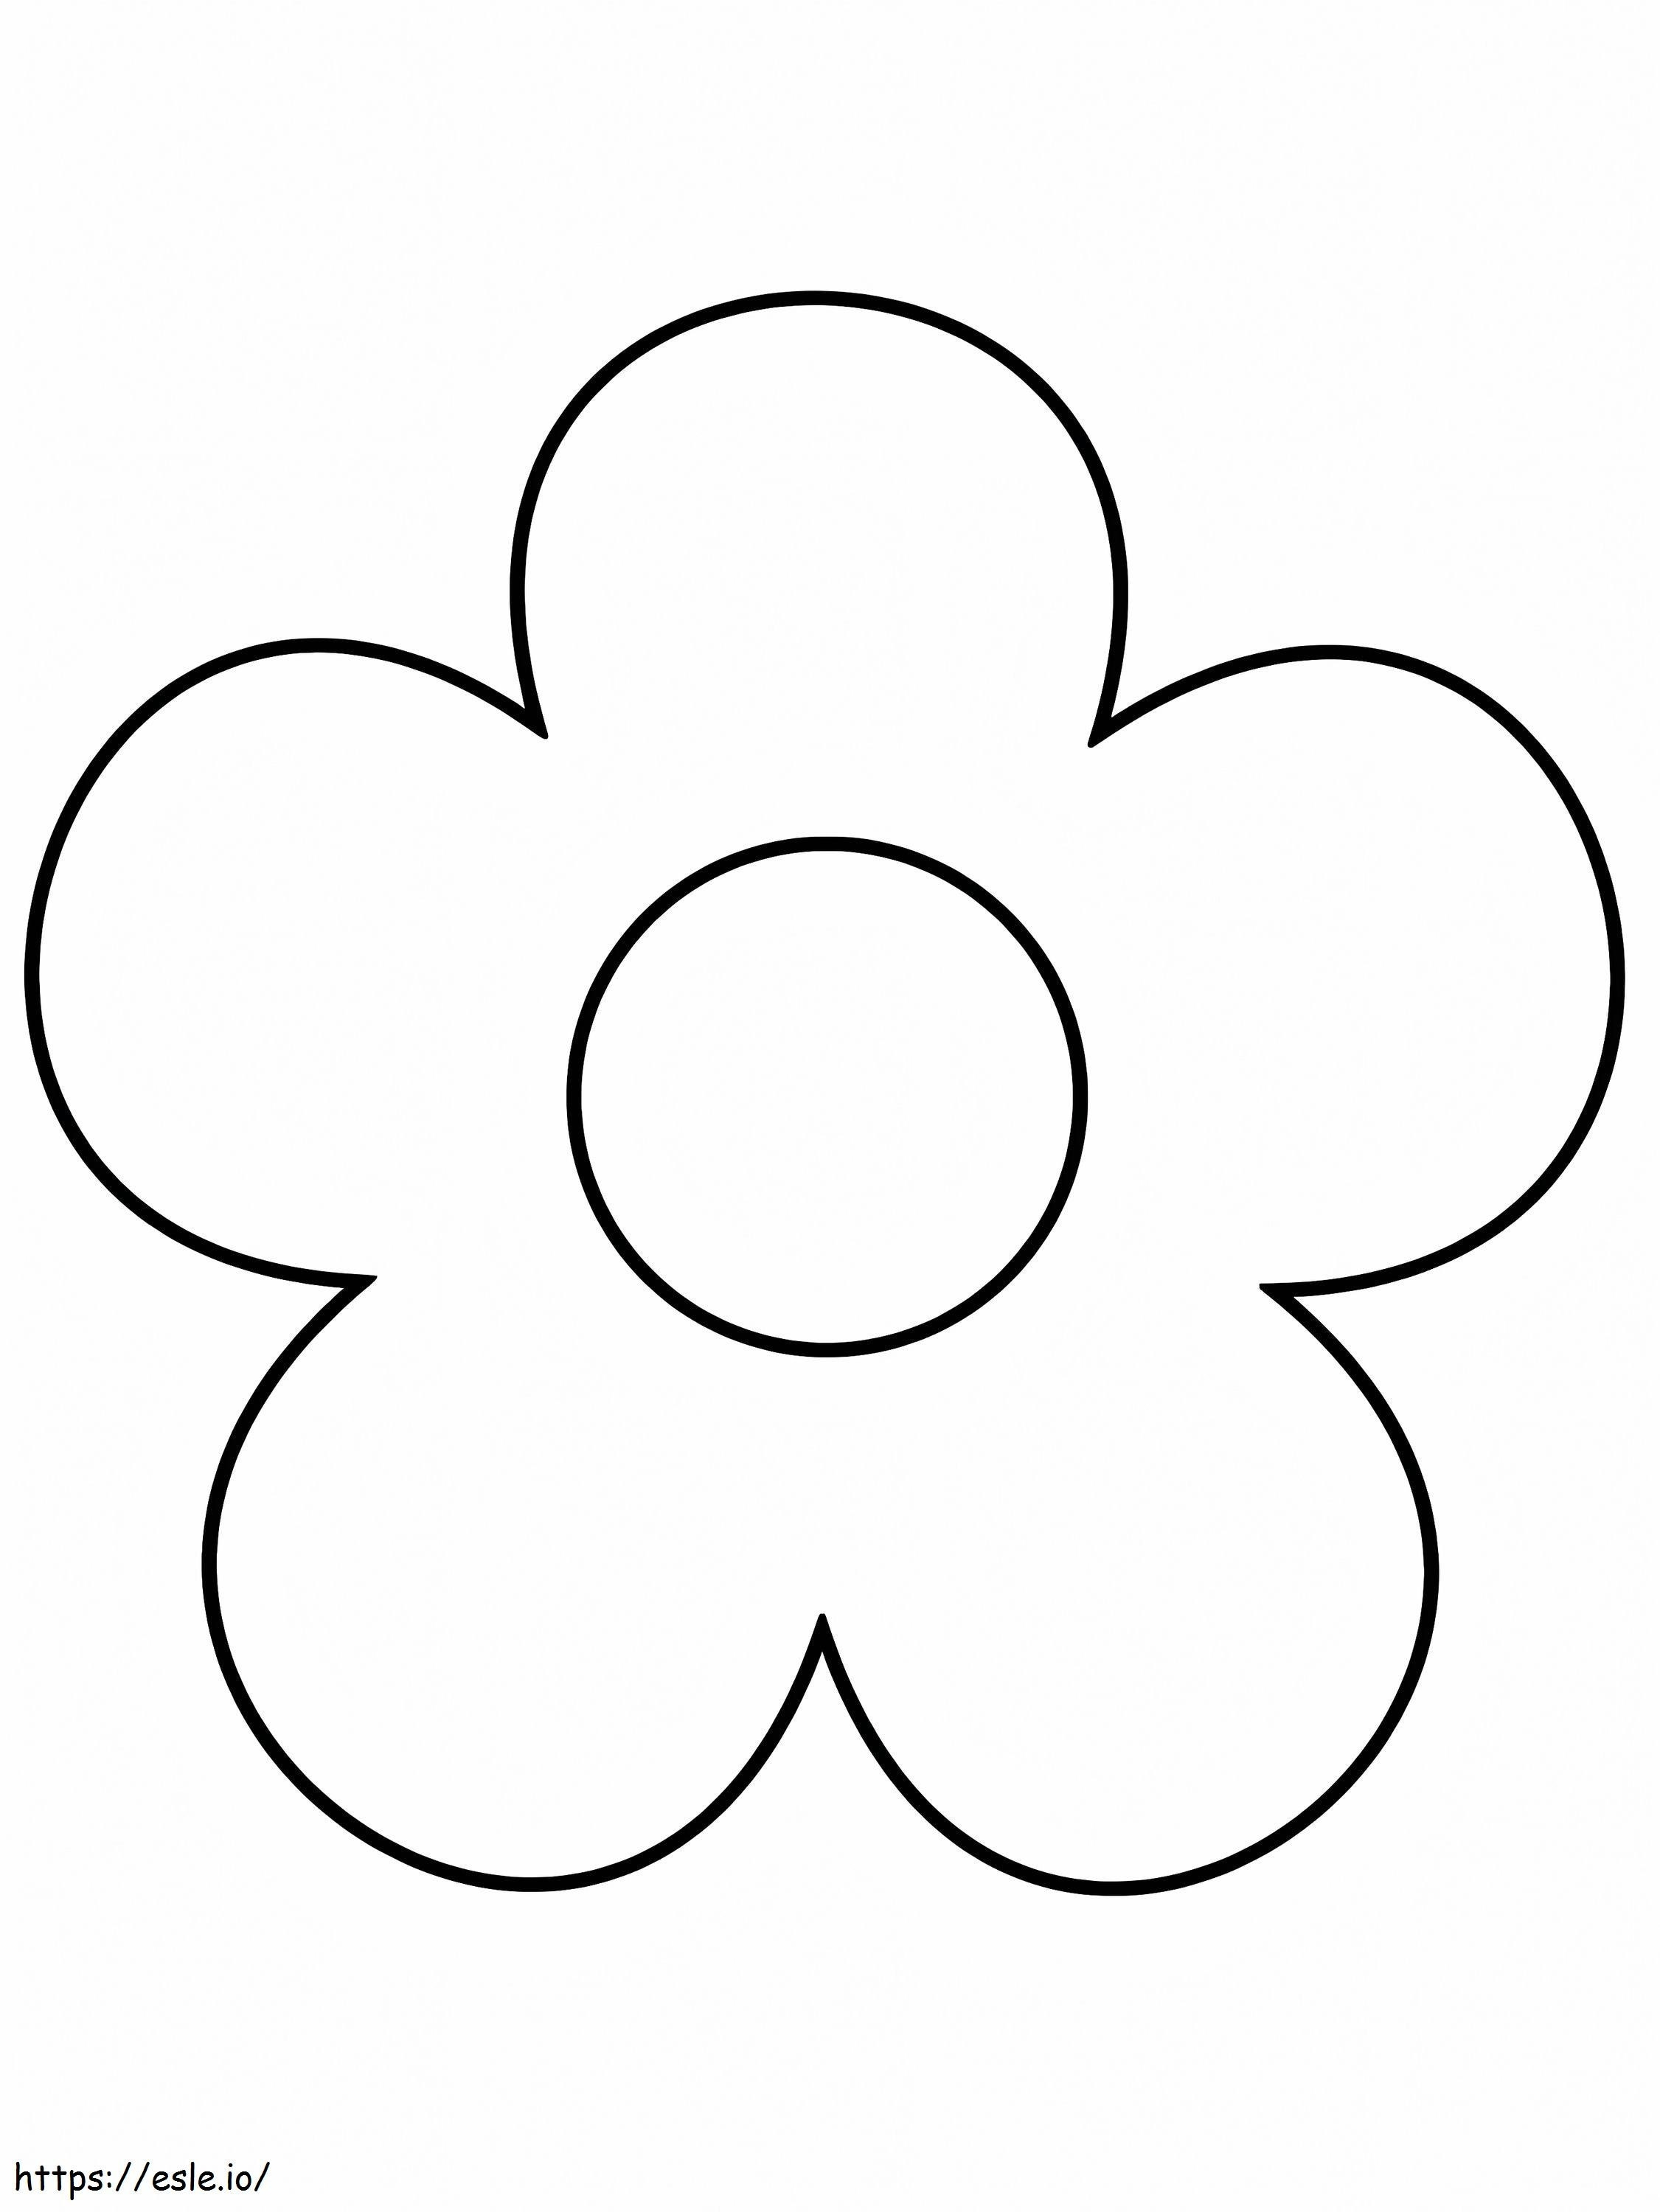 Sehr einfache Blütenform ausmalbilder